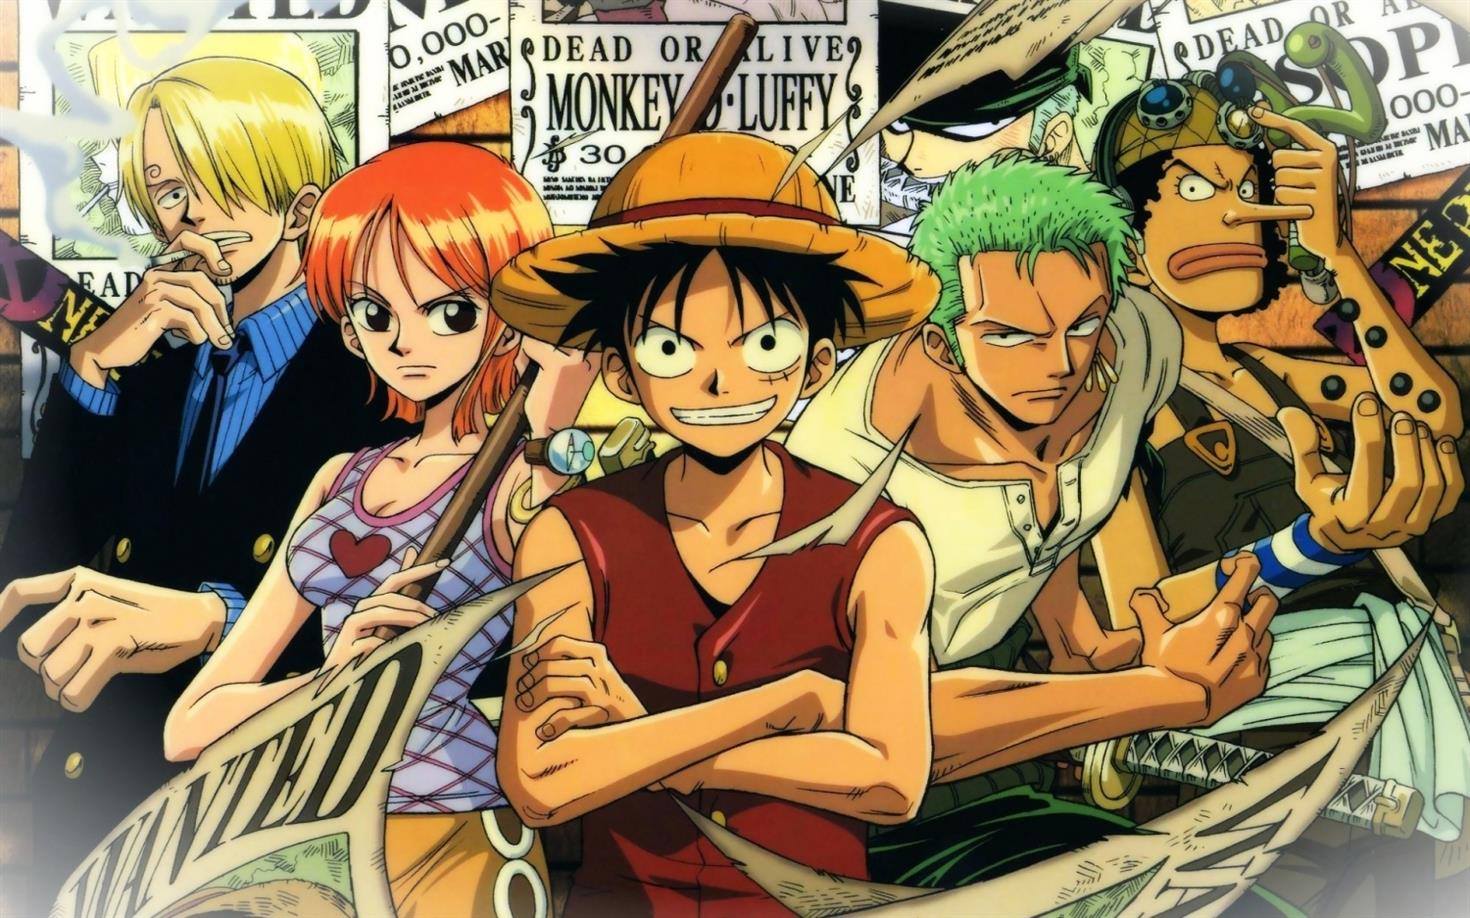 Date De Sortie De L Episode 978 De One Piece Mise A Jour Le Debut D Une Guerre Totale Contre Kaido Topdata News